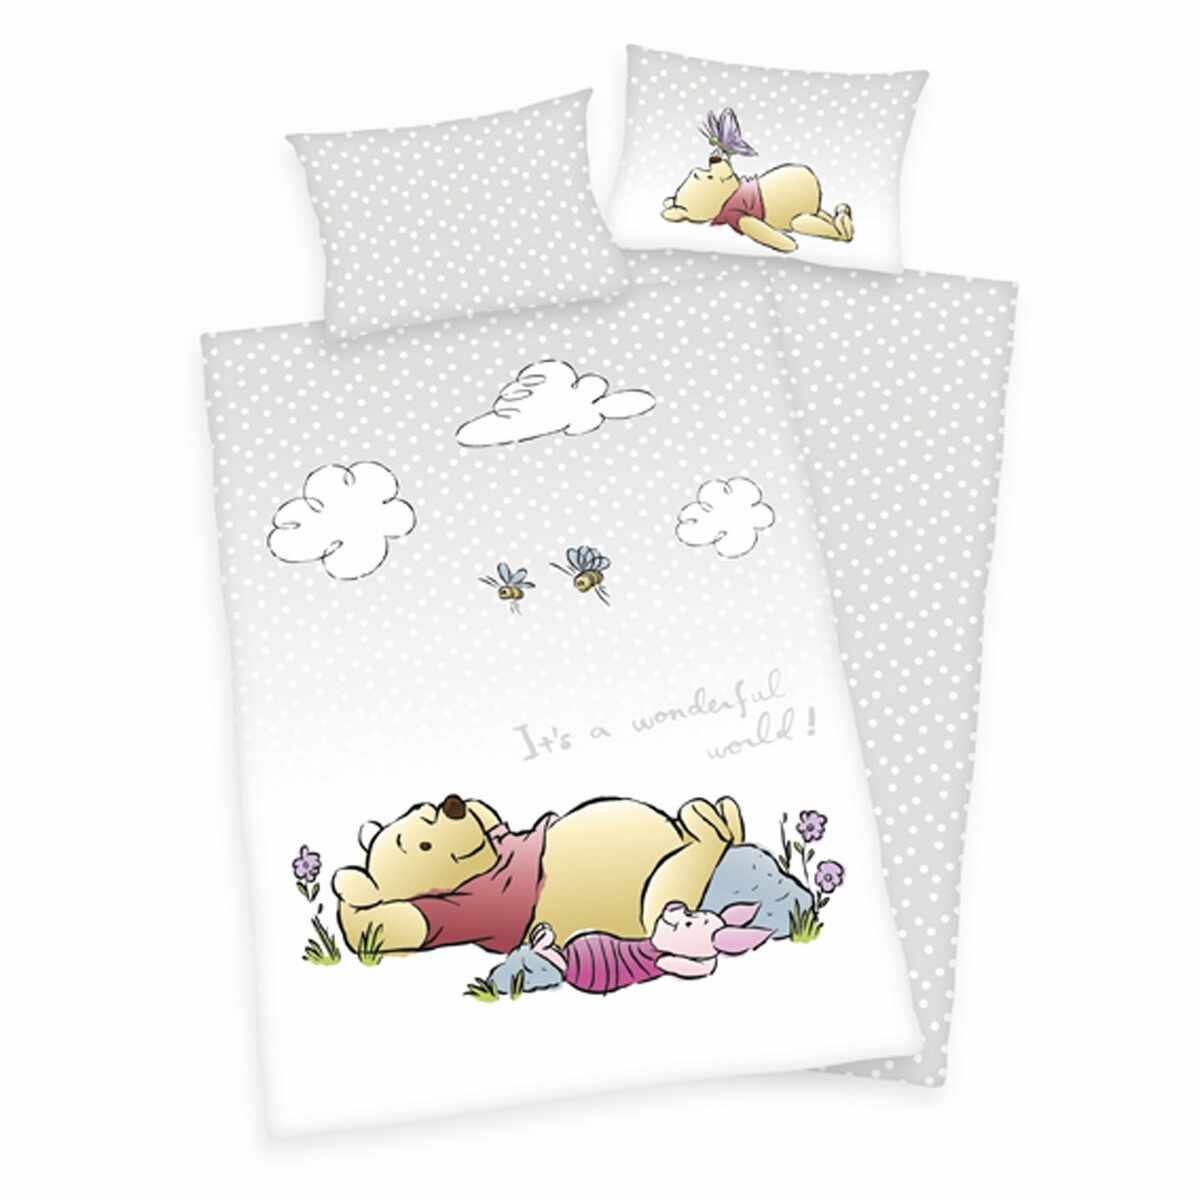 Lenjerie de pat Herding Winnie the Pooh, din bumbac, pentru copii, 100 x 135 cm, 40 x 60 cm